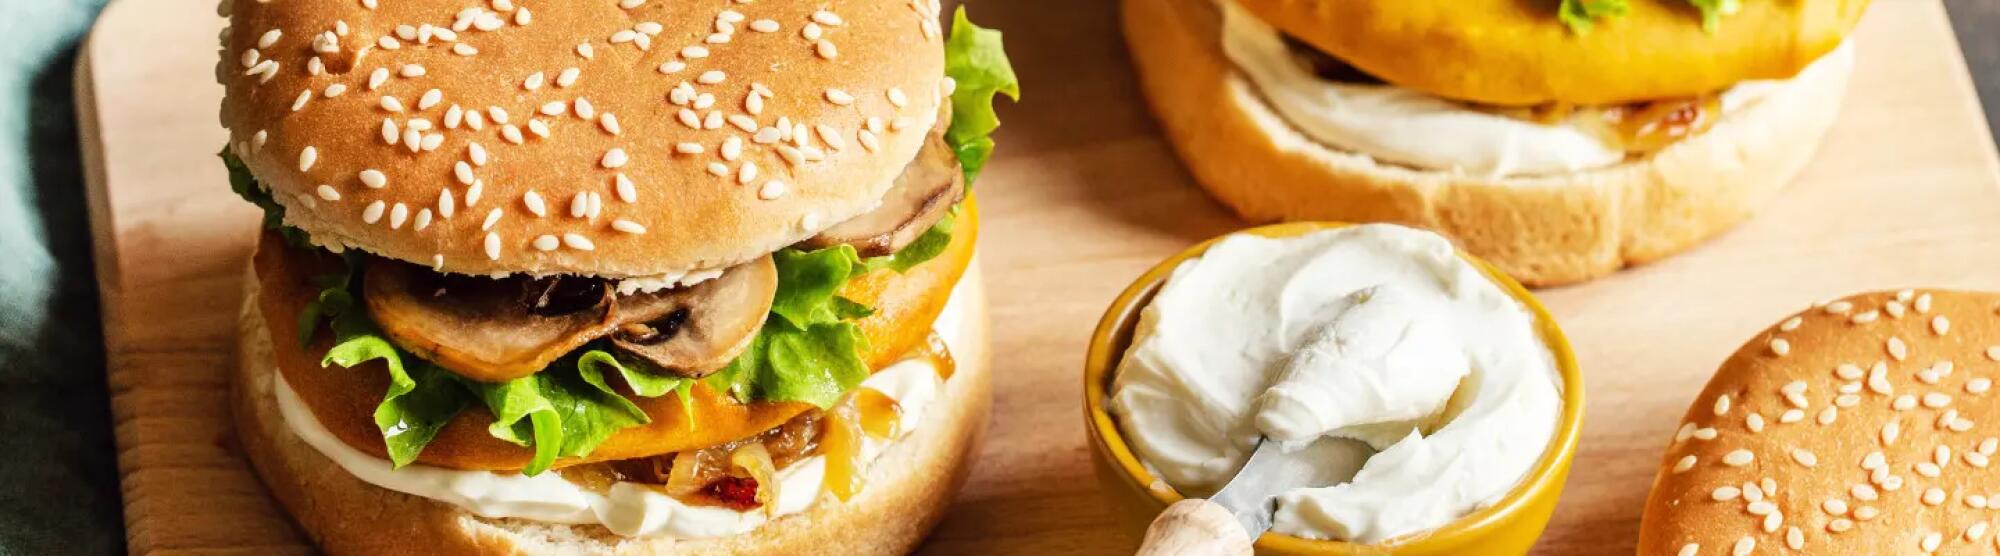 Recette : Hamburger de patates douces et fromage frais